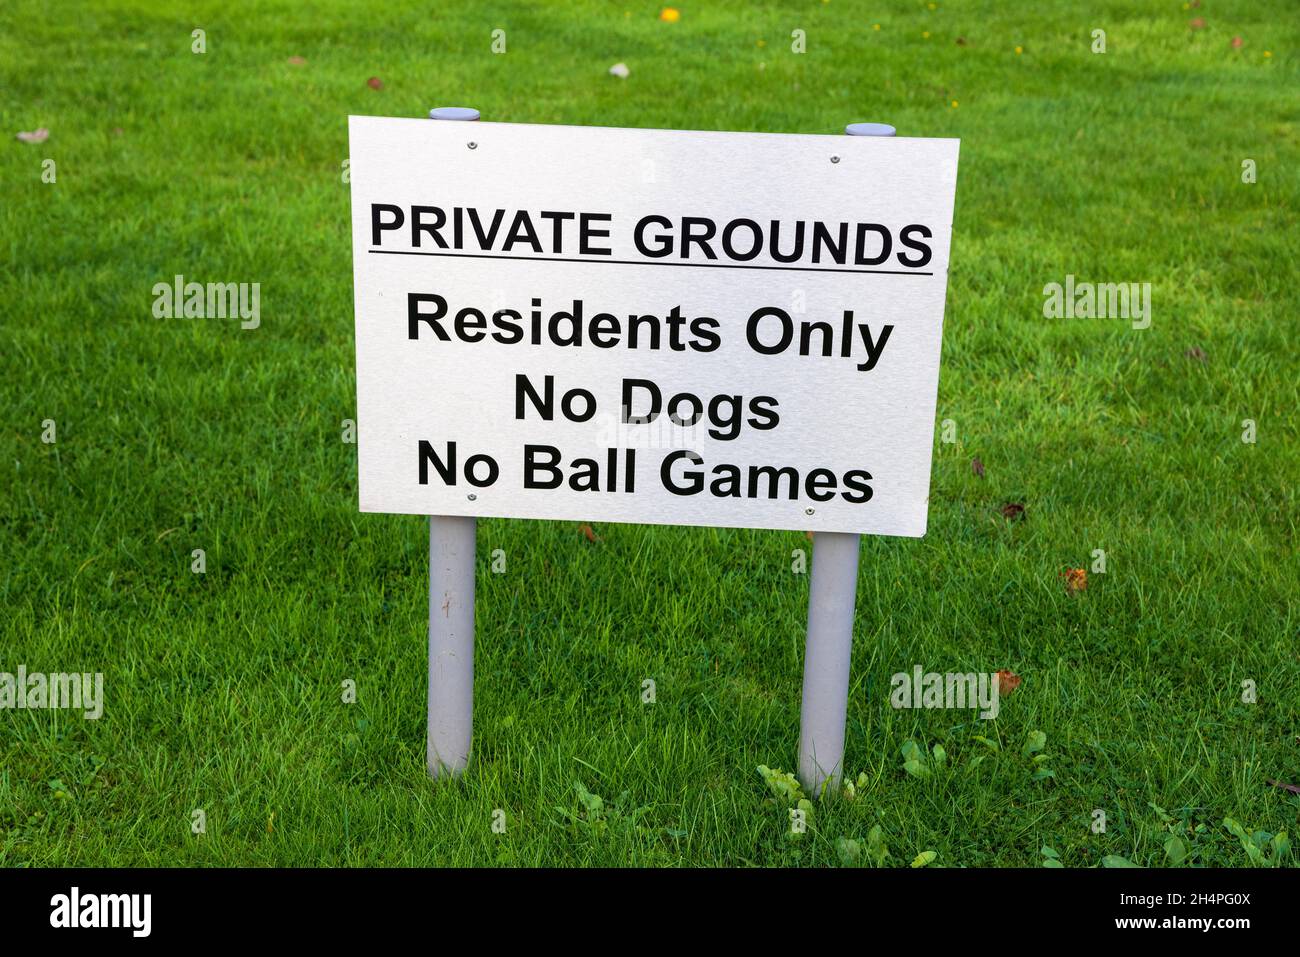 Ein Verbotsschild, das Ballspiele für eine gehobene Wohnimmobilienentwicklung verbietet. Stockfoto